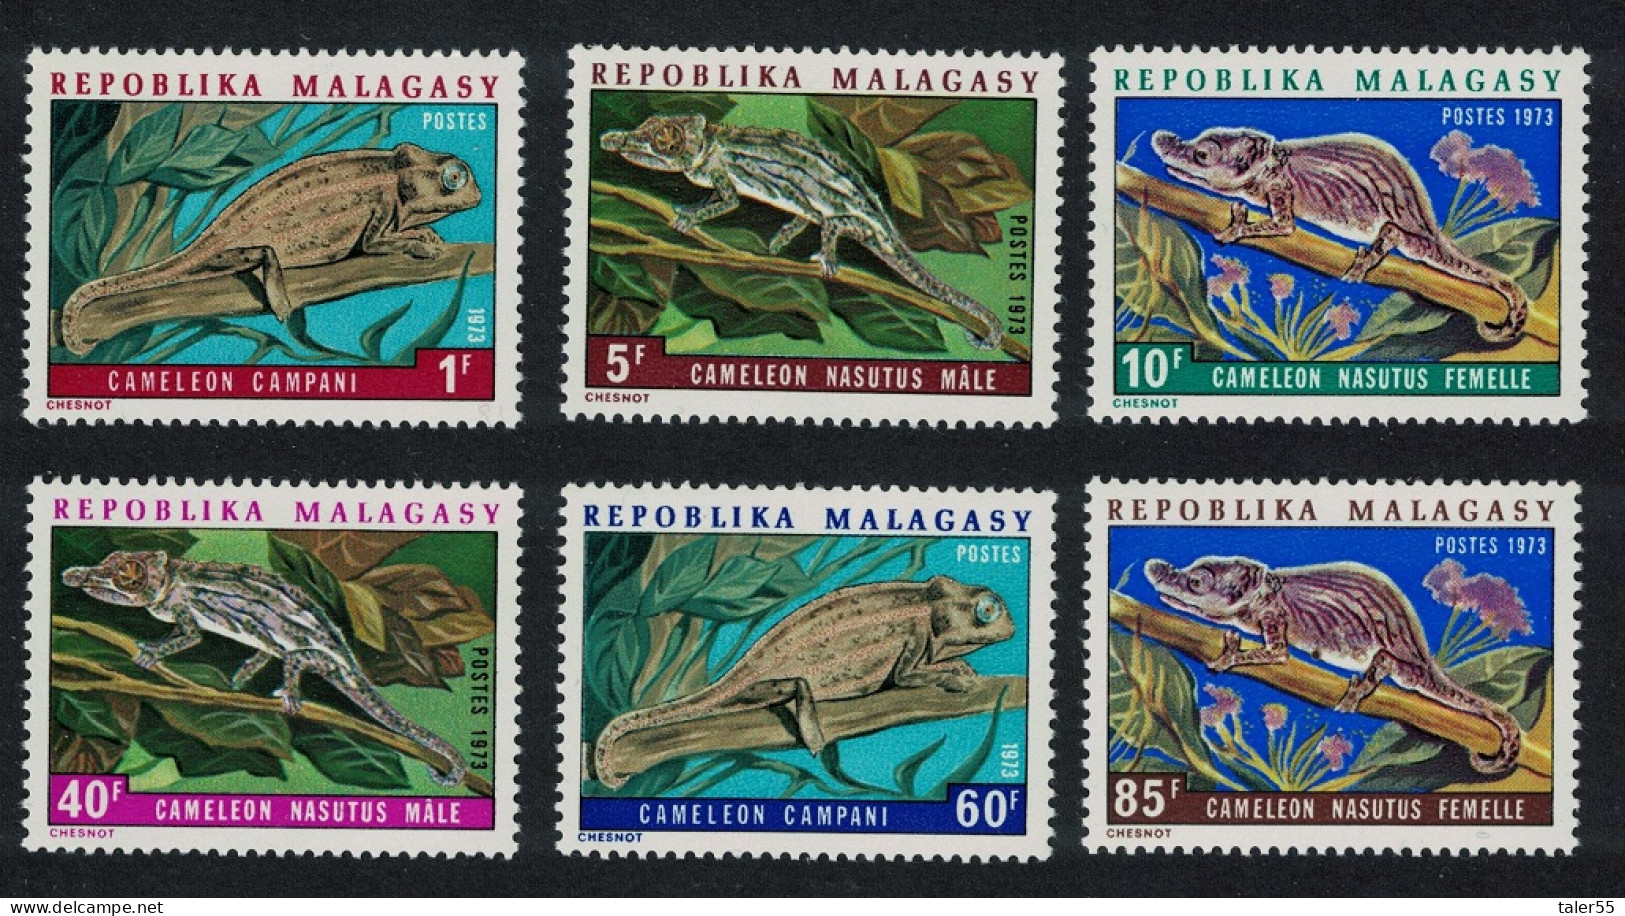 Malagasy Rep. Chameleons 6v 1973 MNH SG#246-251 - Madagascar (1960-...)